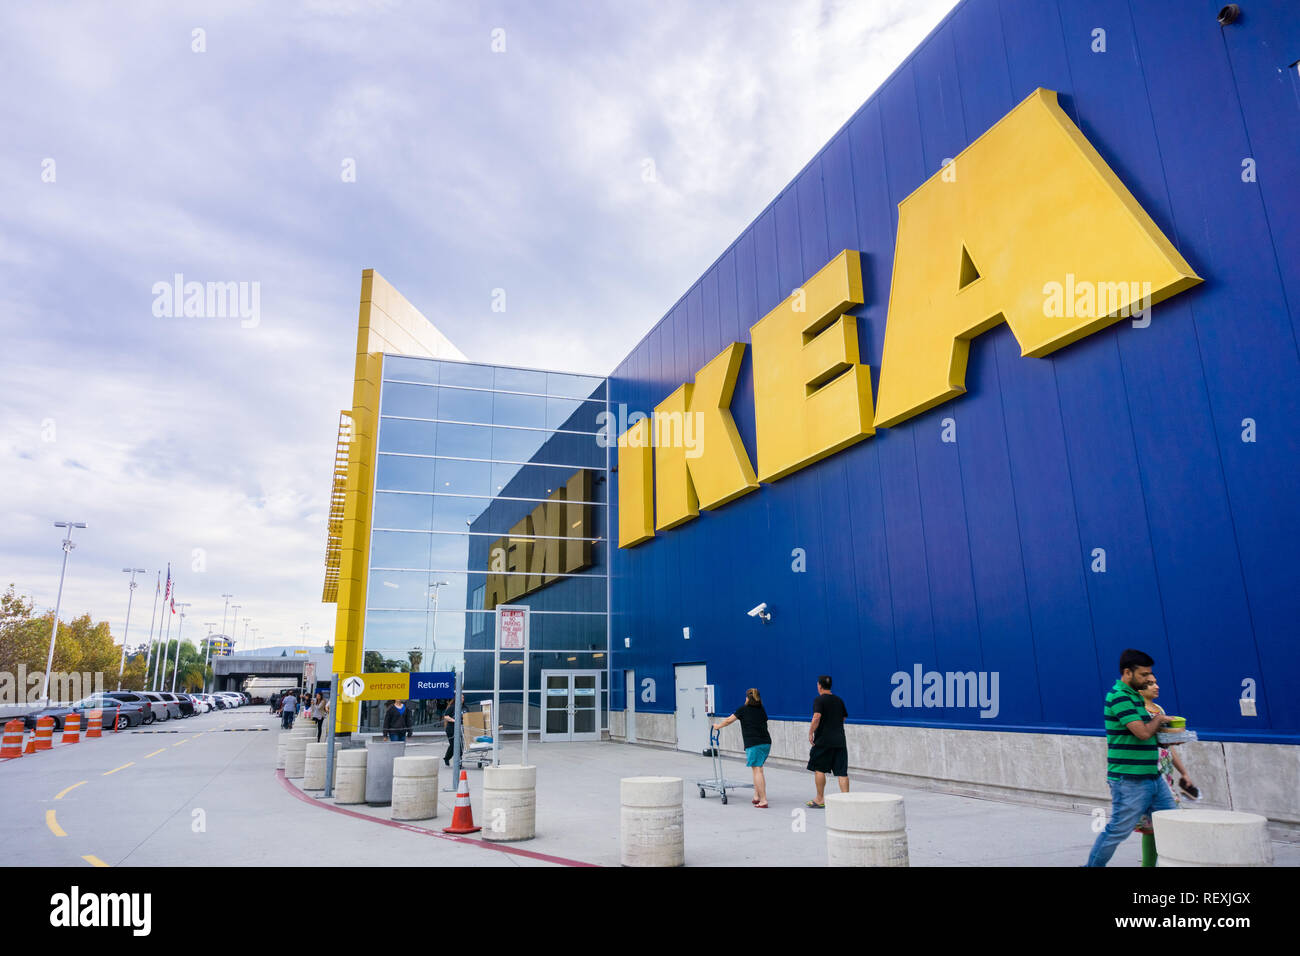 Ikea usa immagini e fotografie stock ad alta risoluzione - Alamy